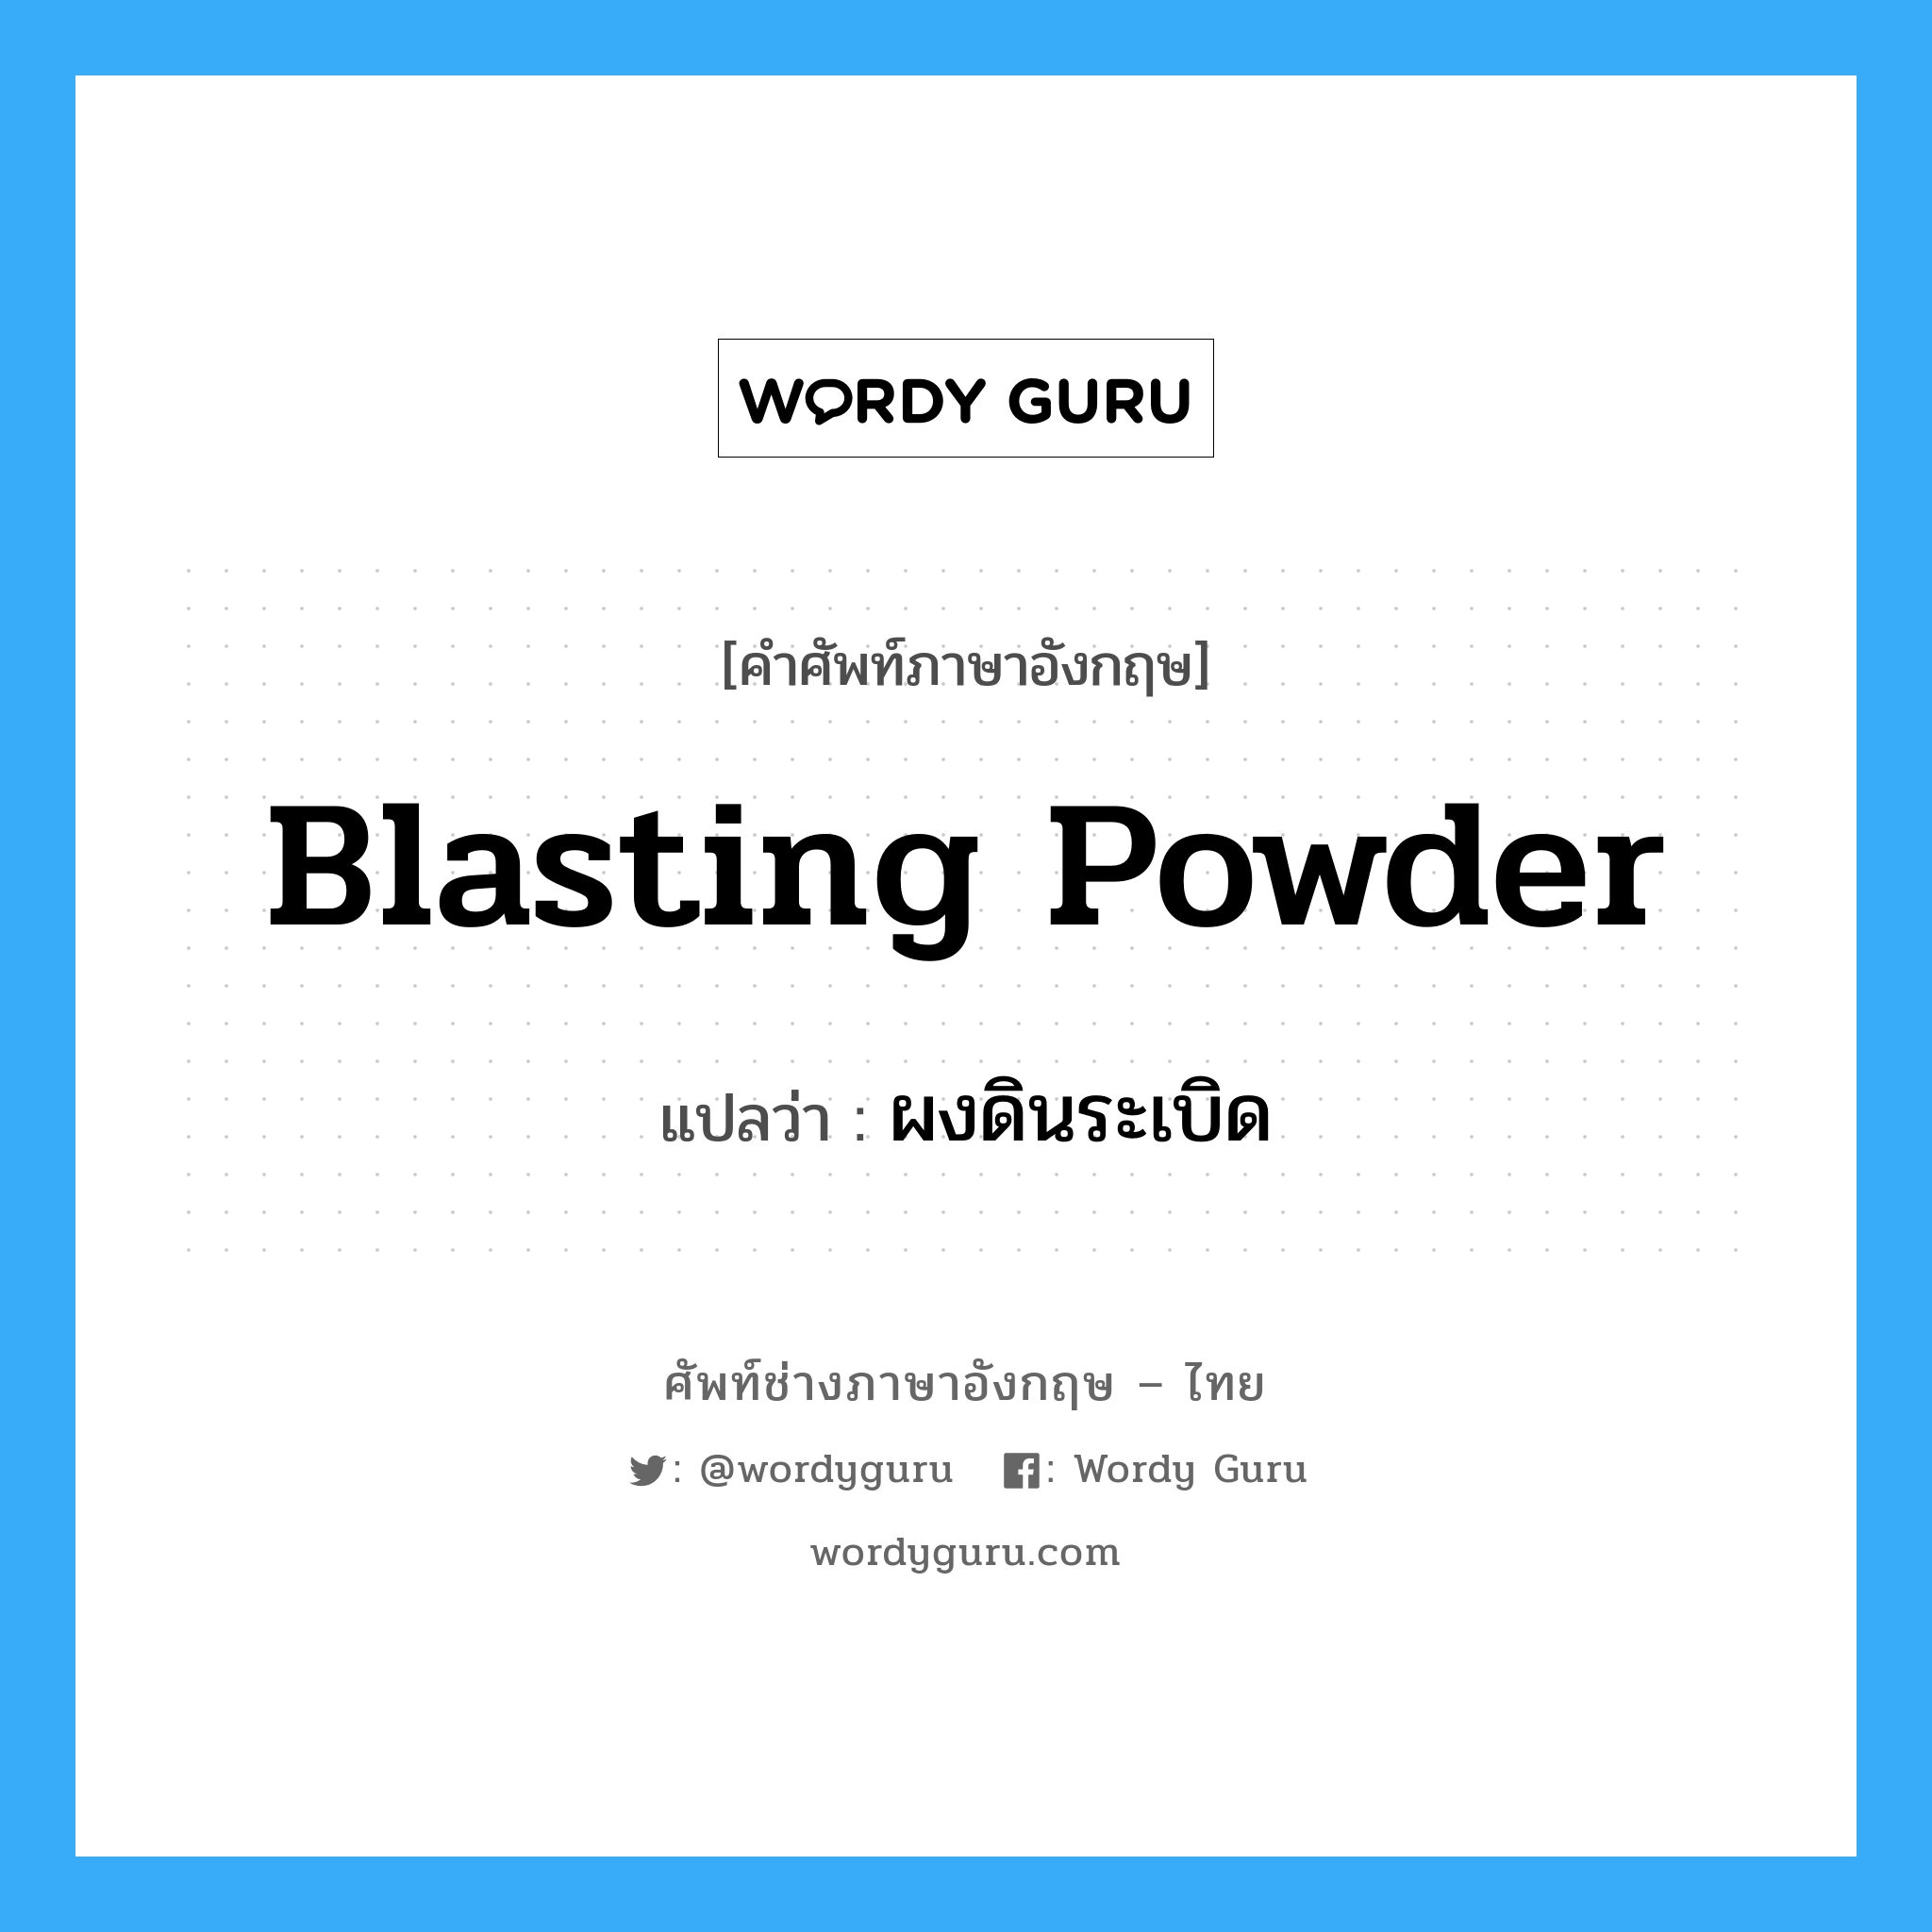 blasting powder แปลว่า?, คำศัพท์ช่างภาษาอังกฤษ - ไทย blasting powder คำศัพท์ภาษาอังกฤษ blasting powder แปลว่า ผงดินระเบิด